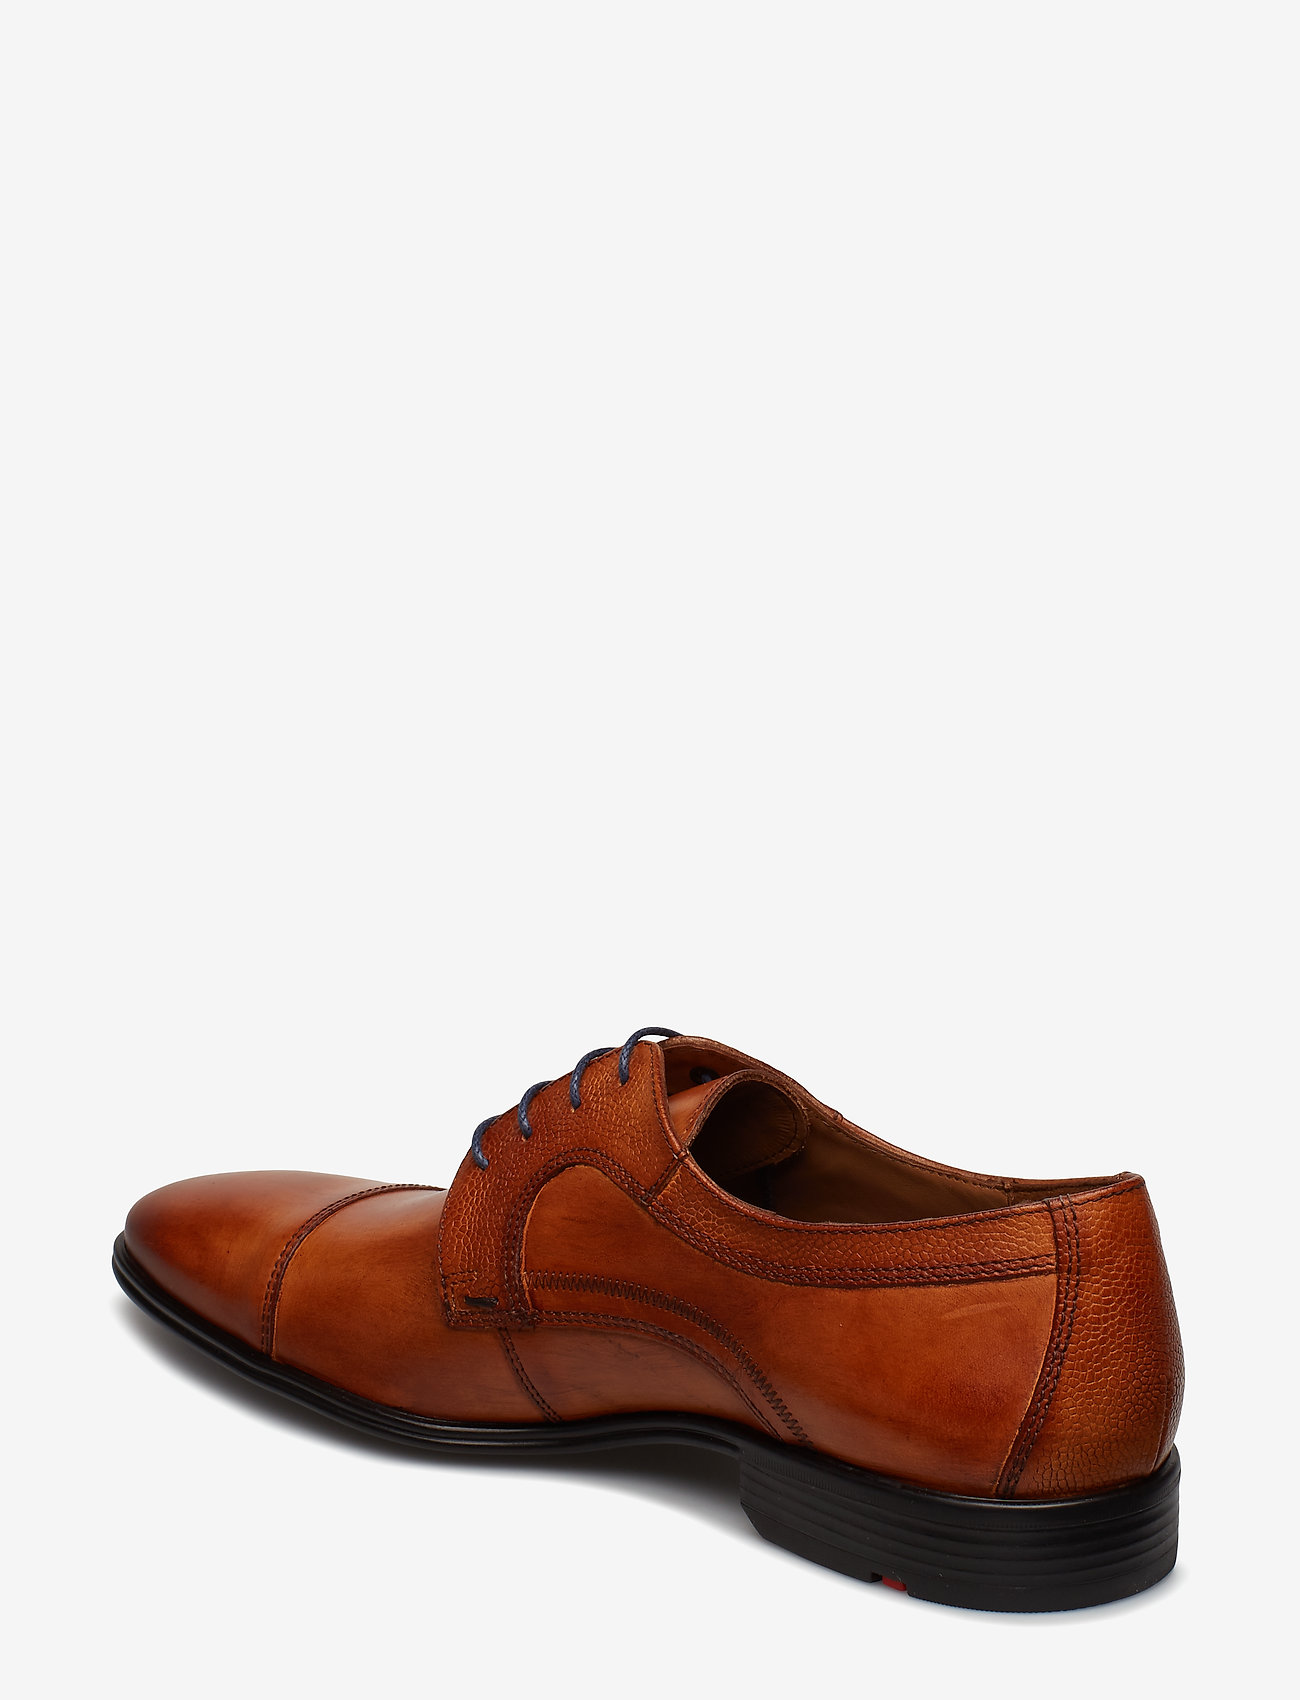 Lloyd - ORWIN - chaussures oxford - 3 - cognac - 1